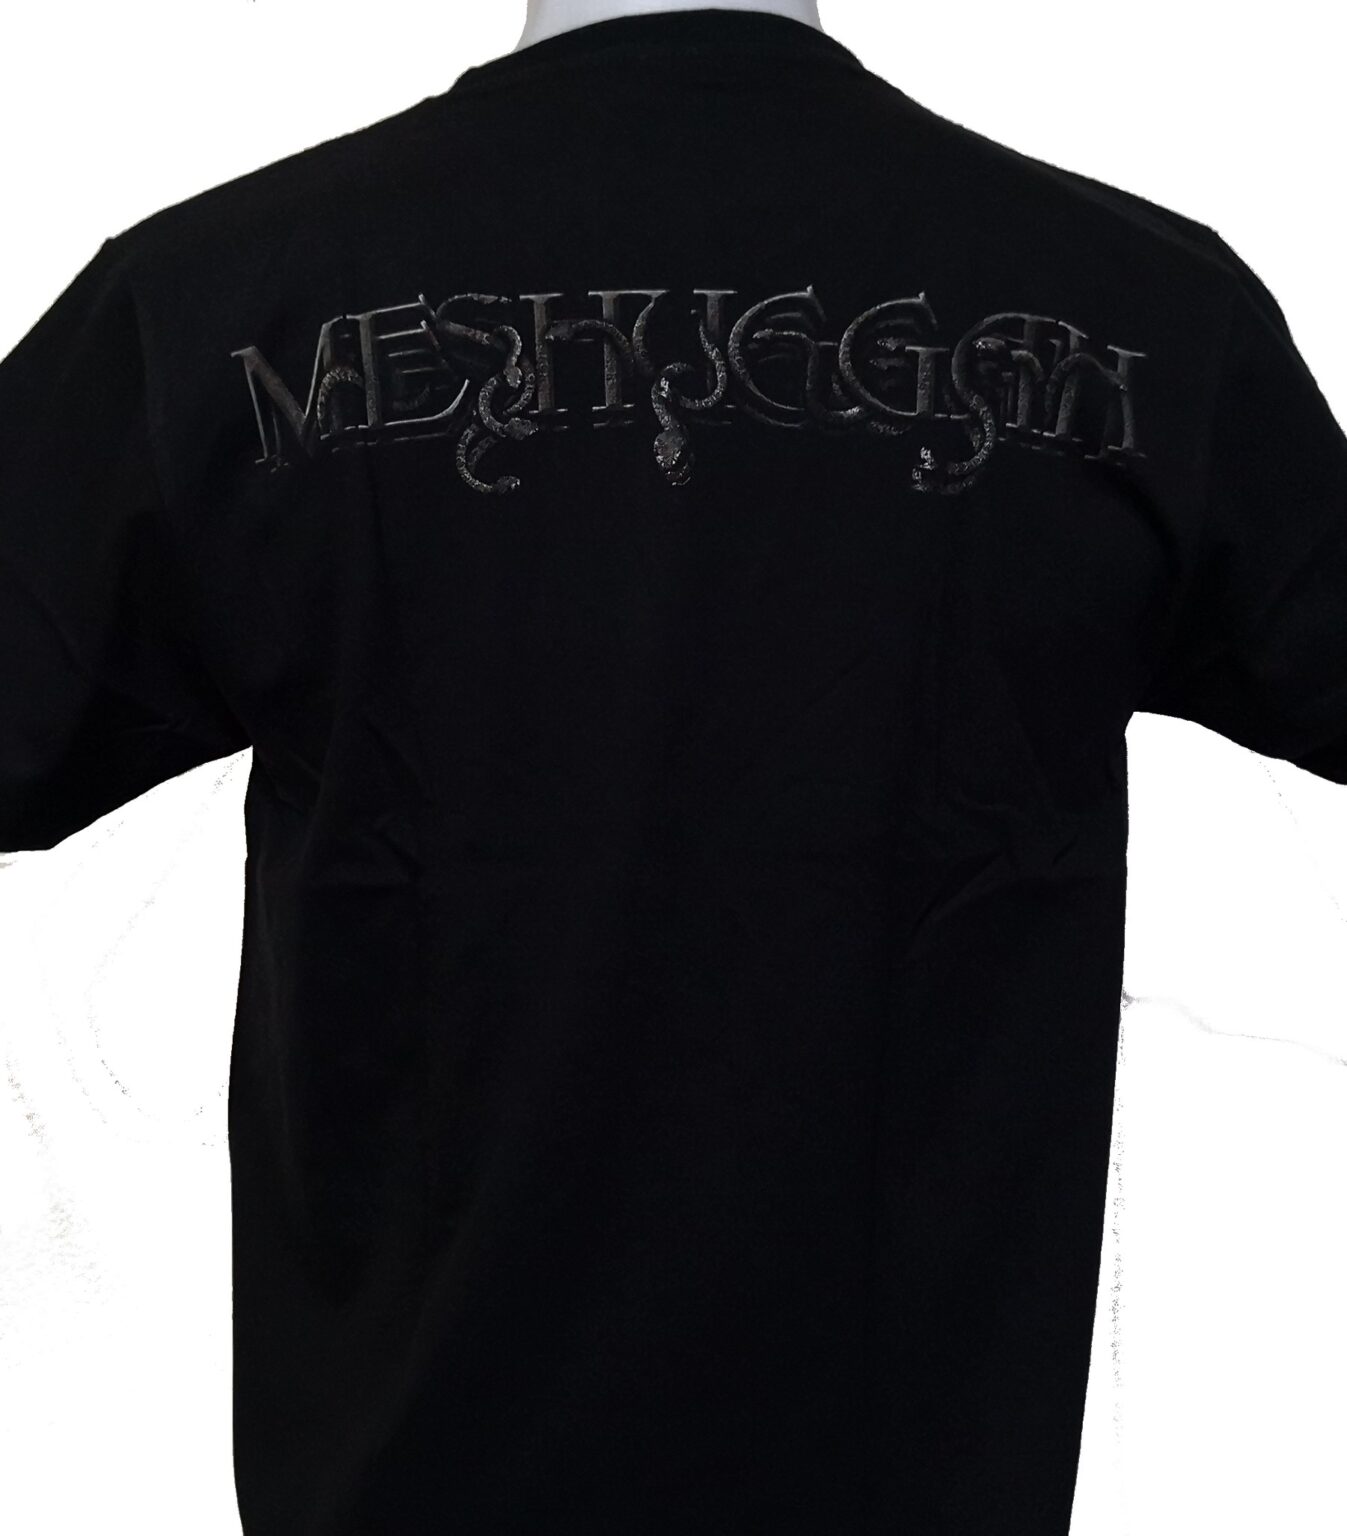 Meshuggah tshirt Koloss size XL RoxxBKK